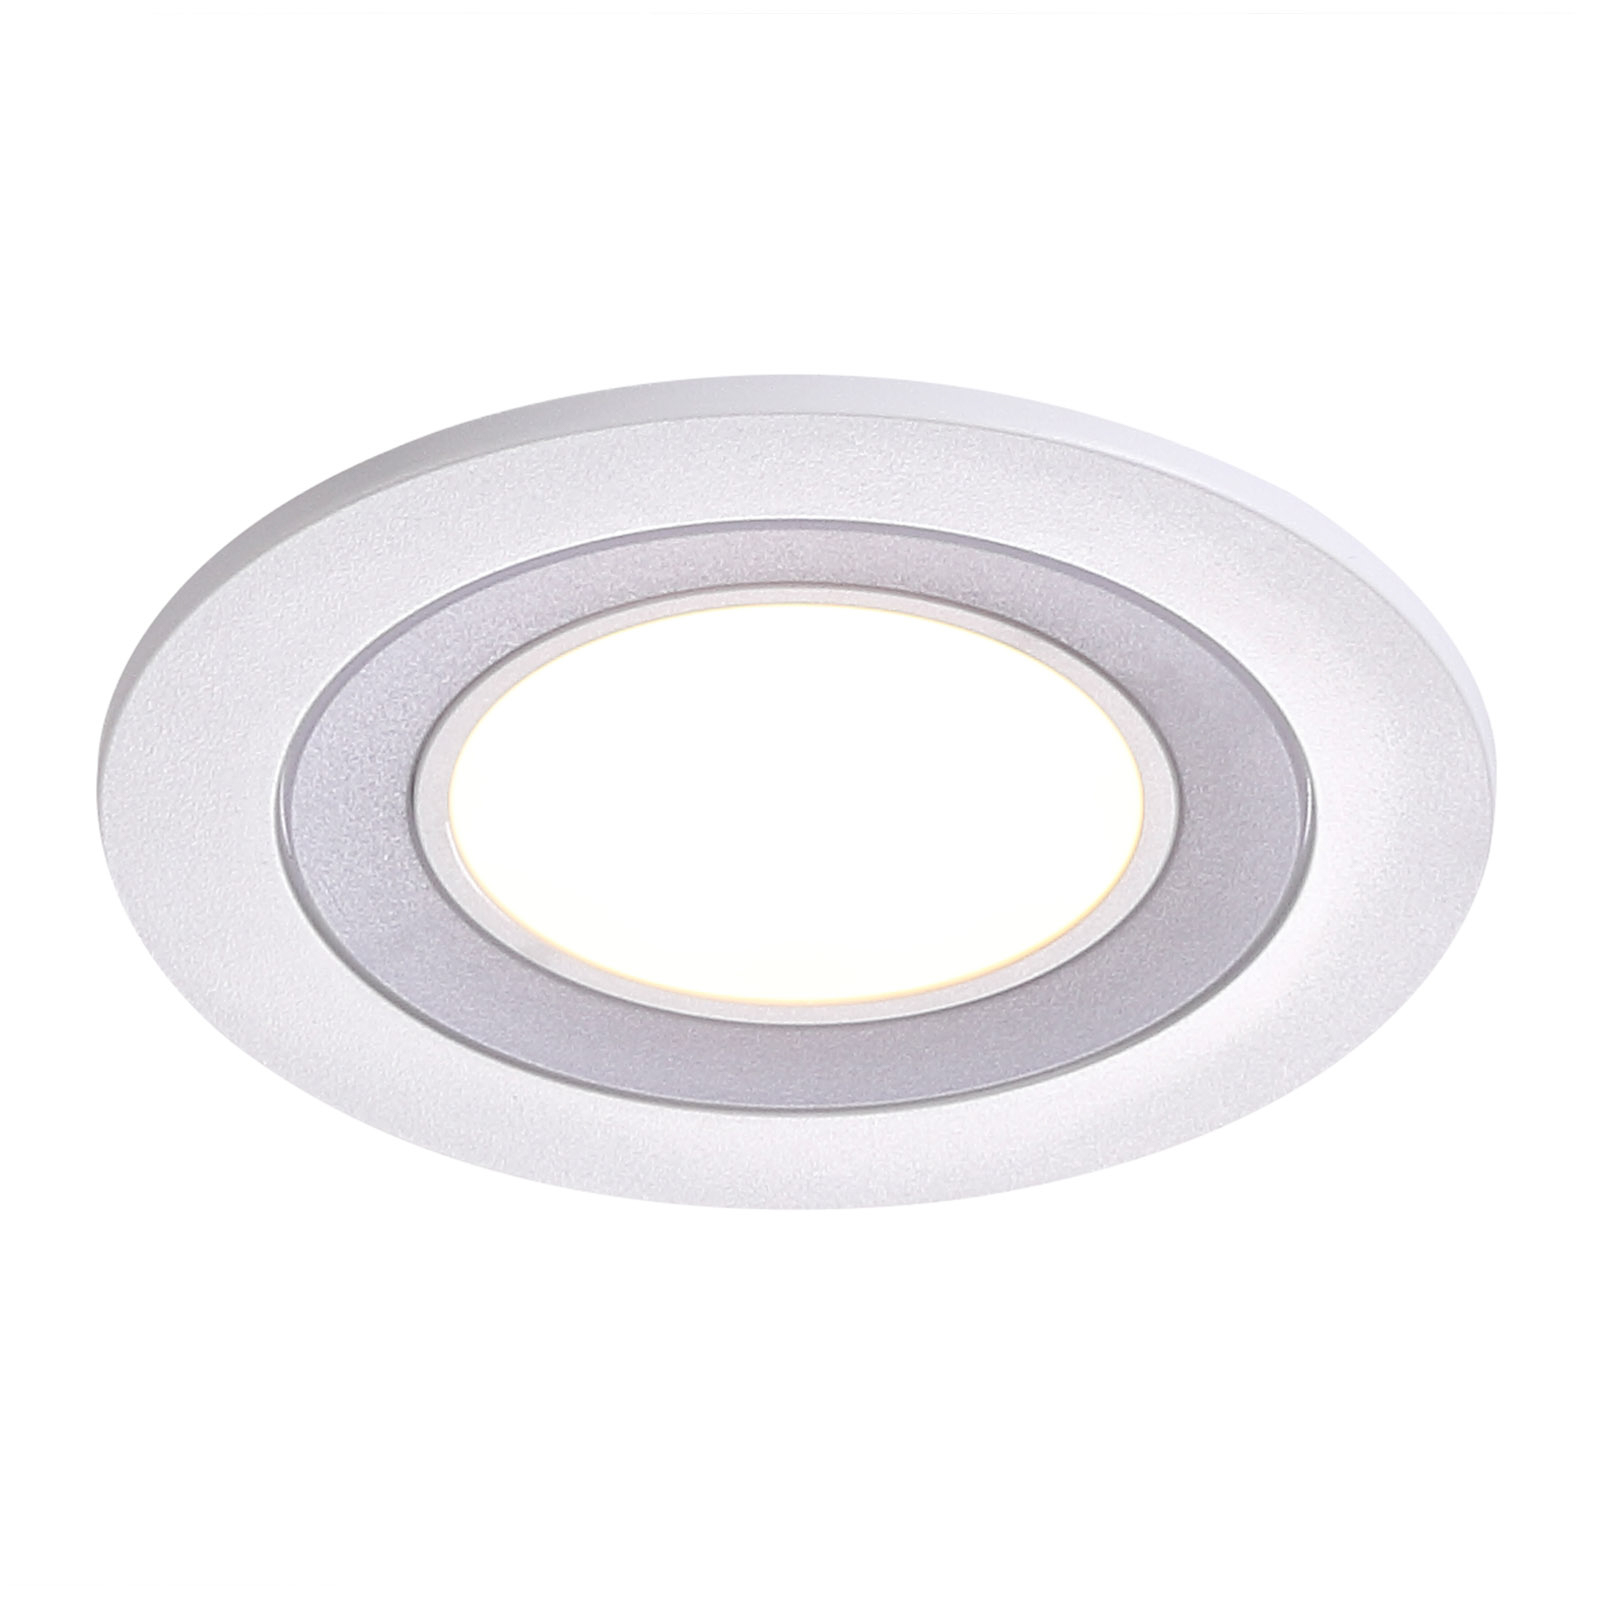 LED podhledové svítidlo Clyde, teplá bílá, Ø 8 cm